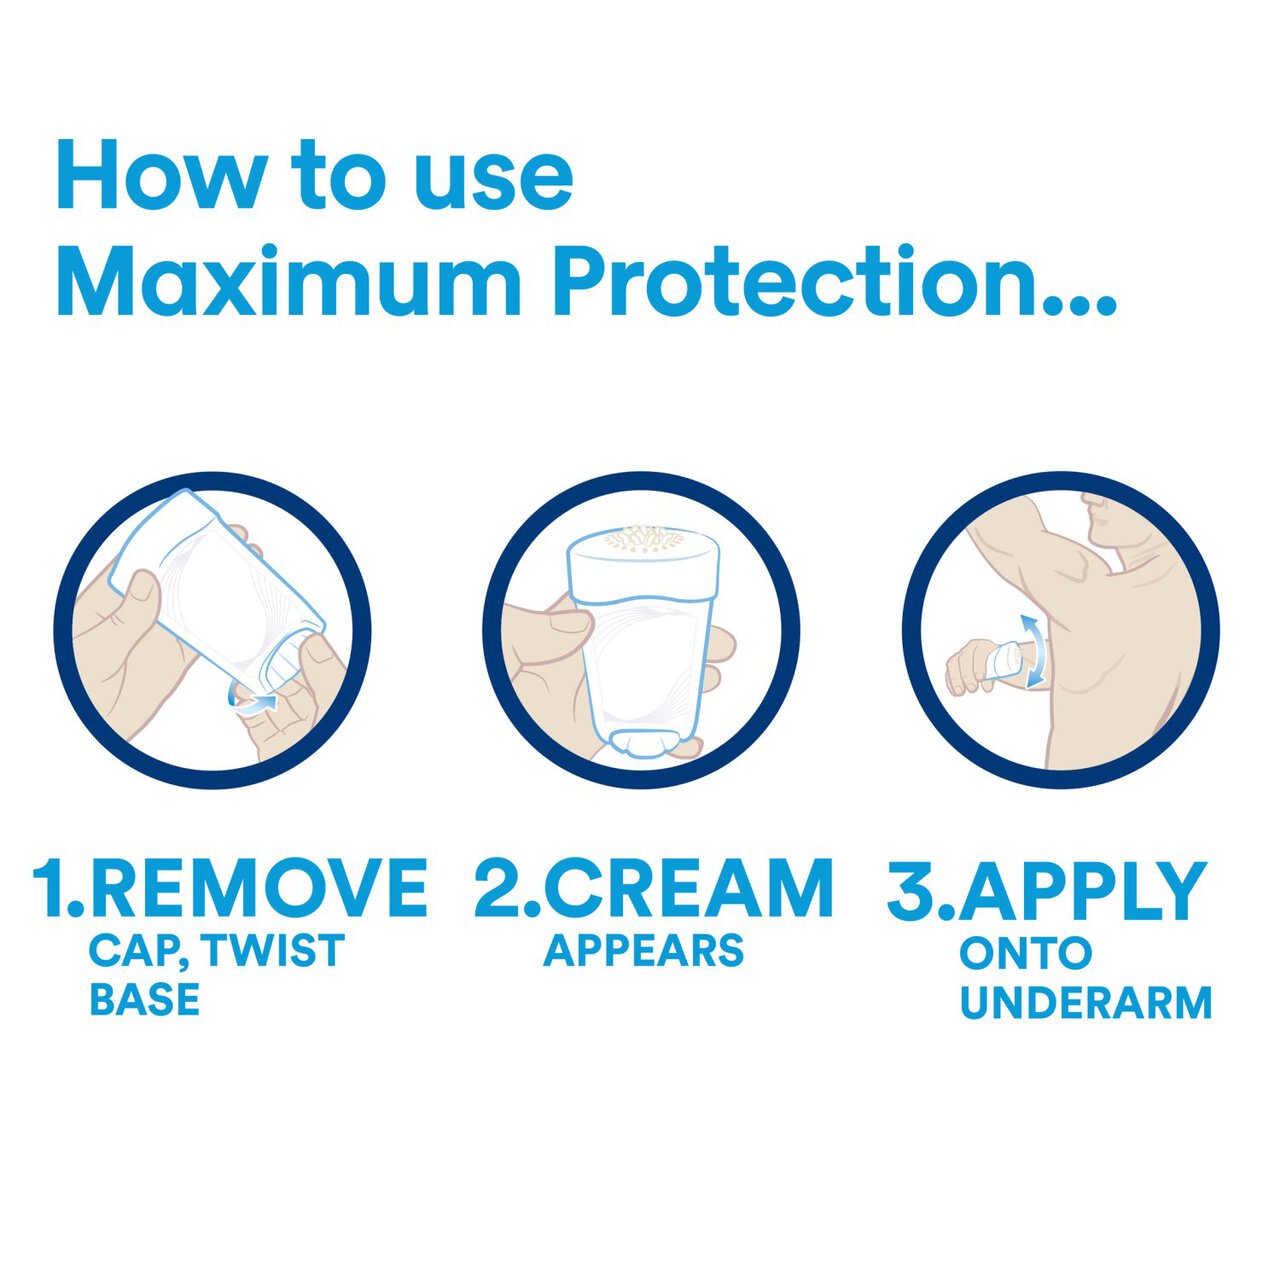 Sure Men Maximum Protection Clean Scent Cream Anti-Perspirant Deodorant 45ml